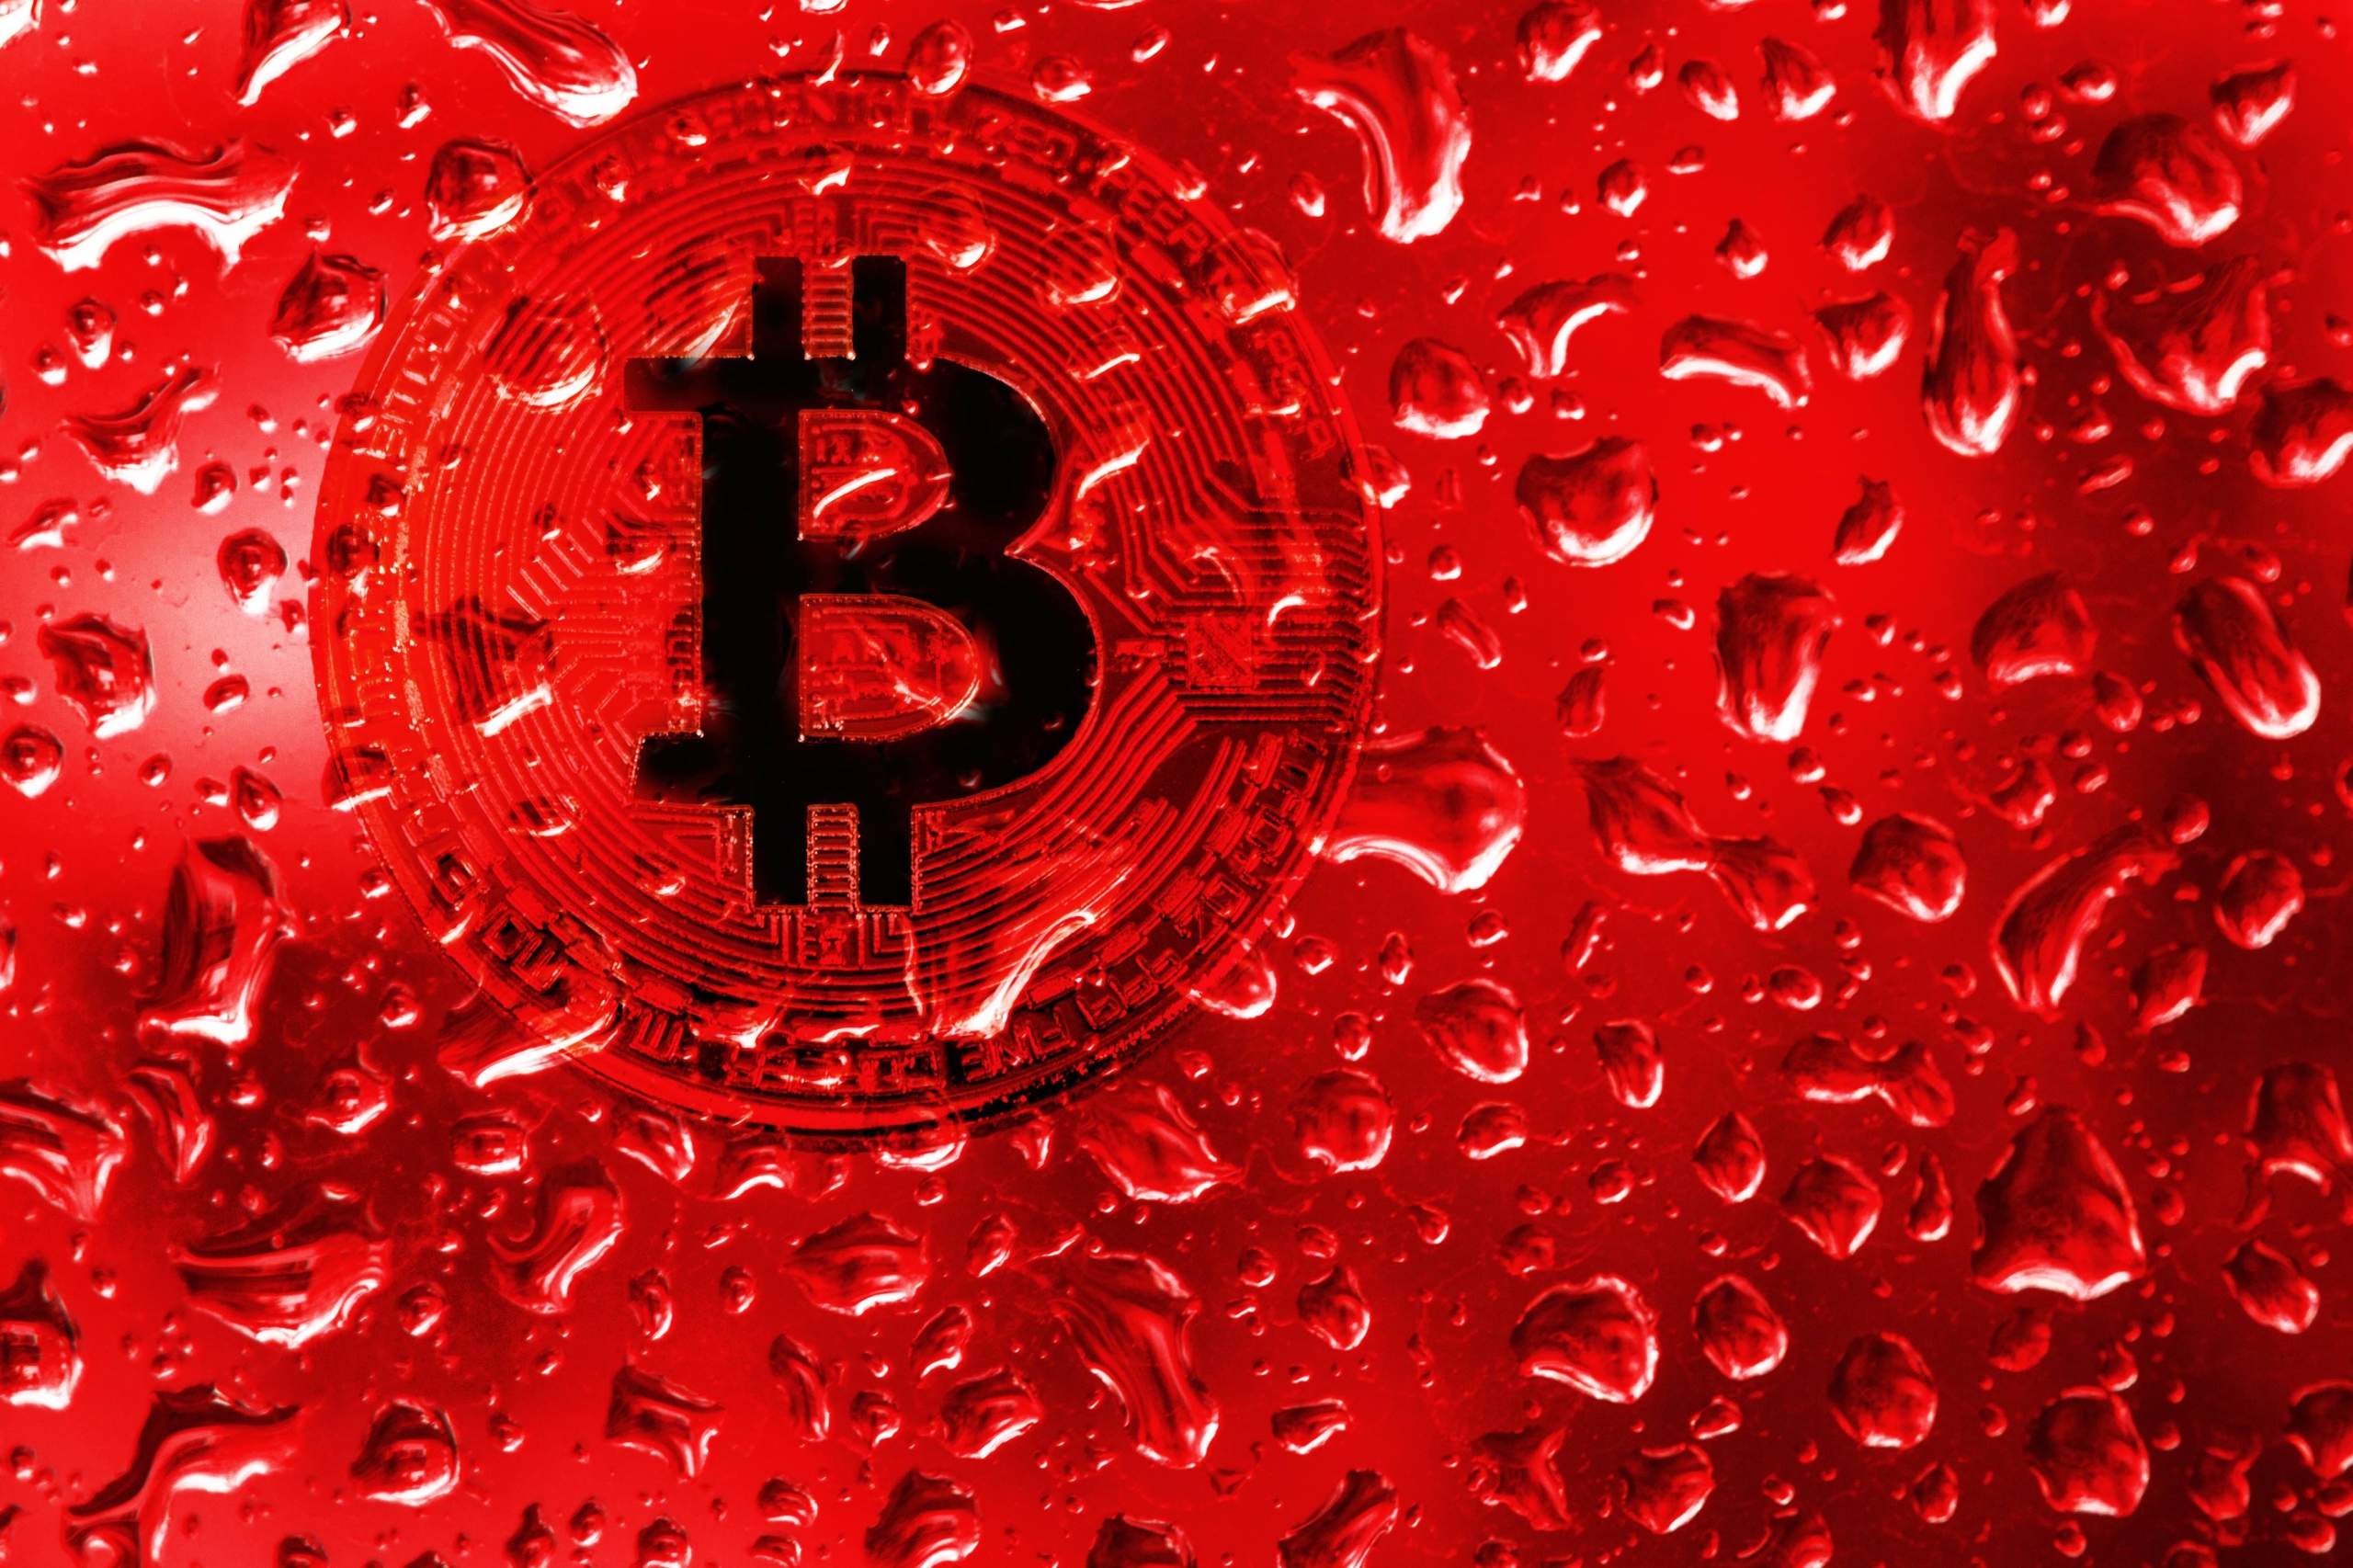 Bitcoin podría enfrentar más correcciones esta semana